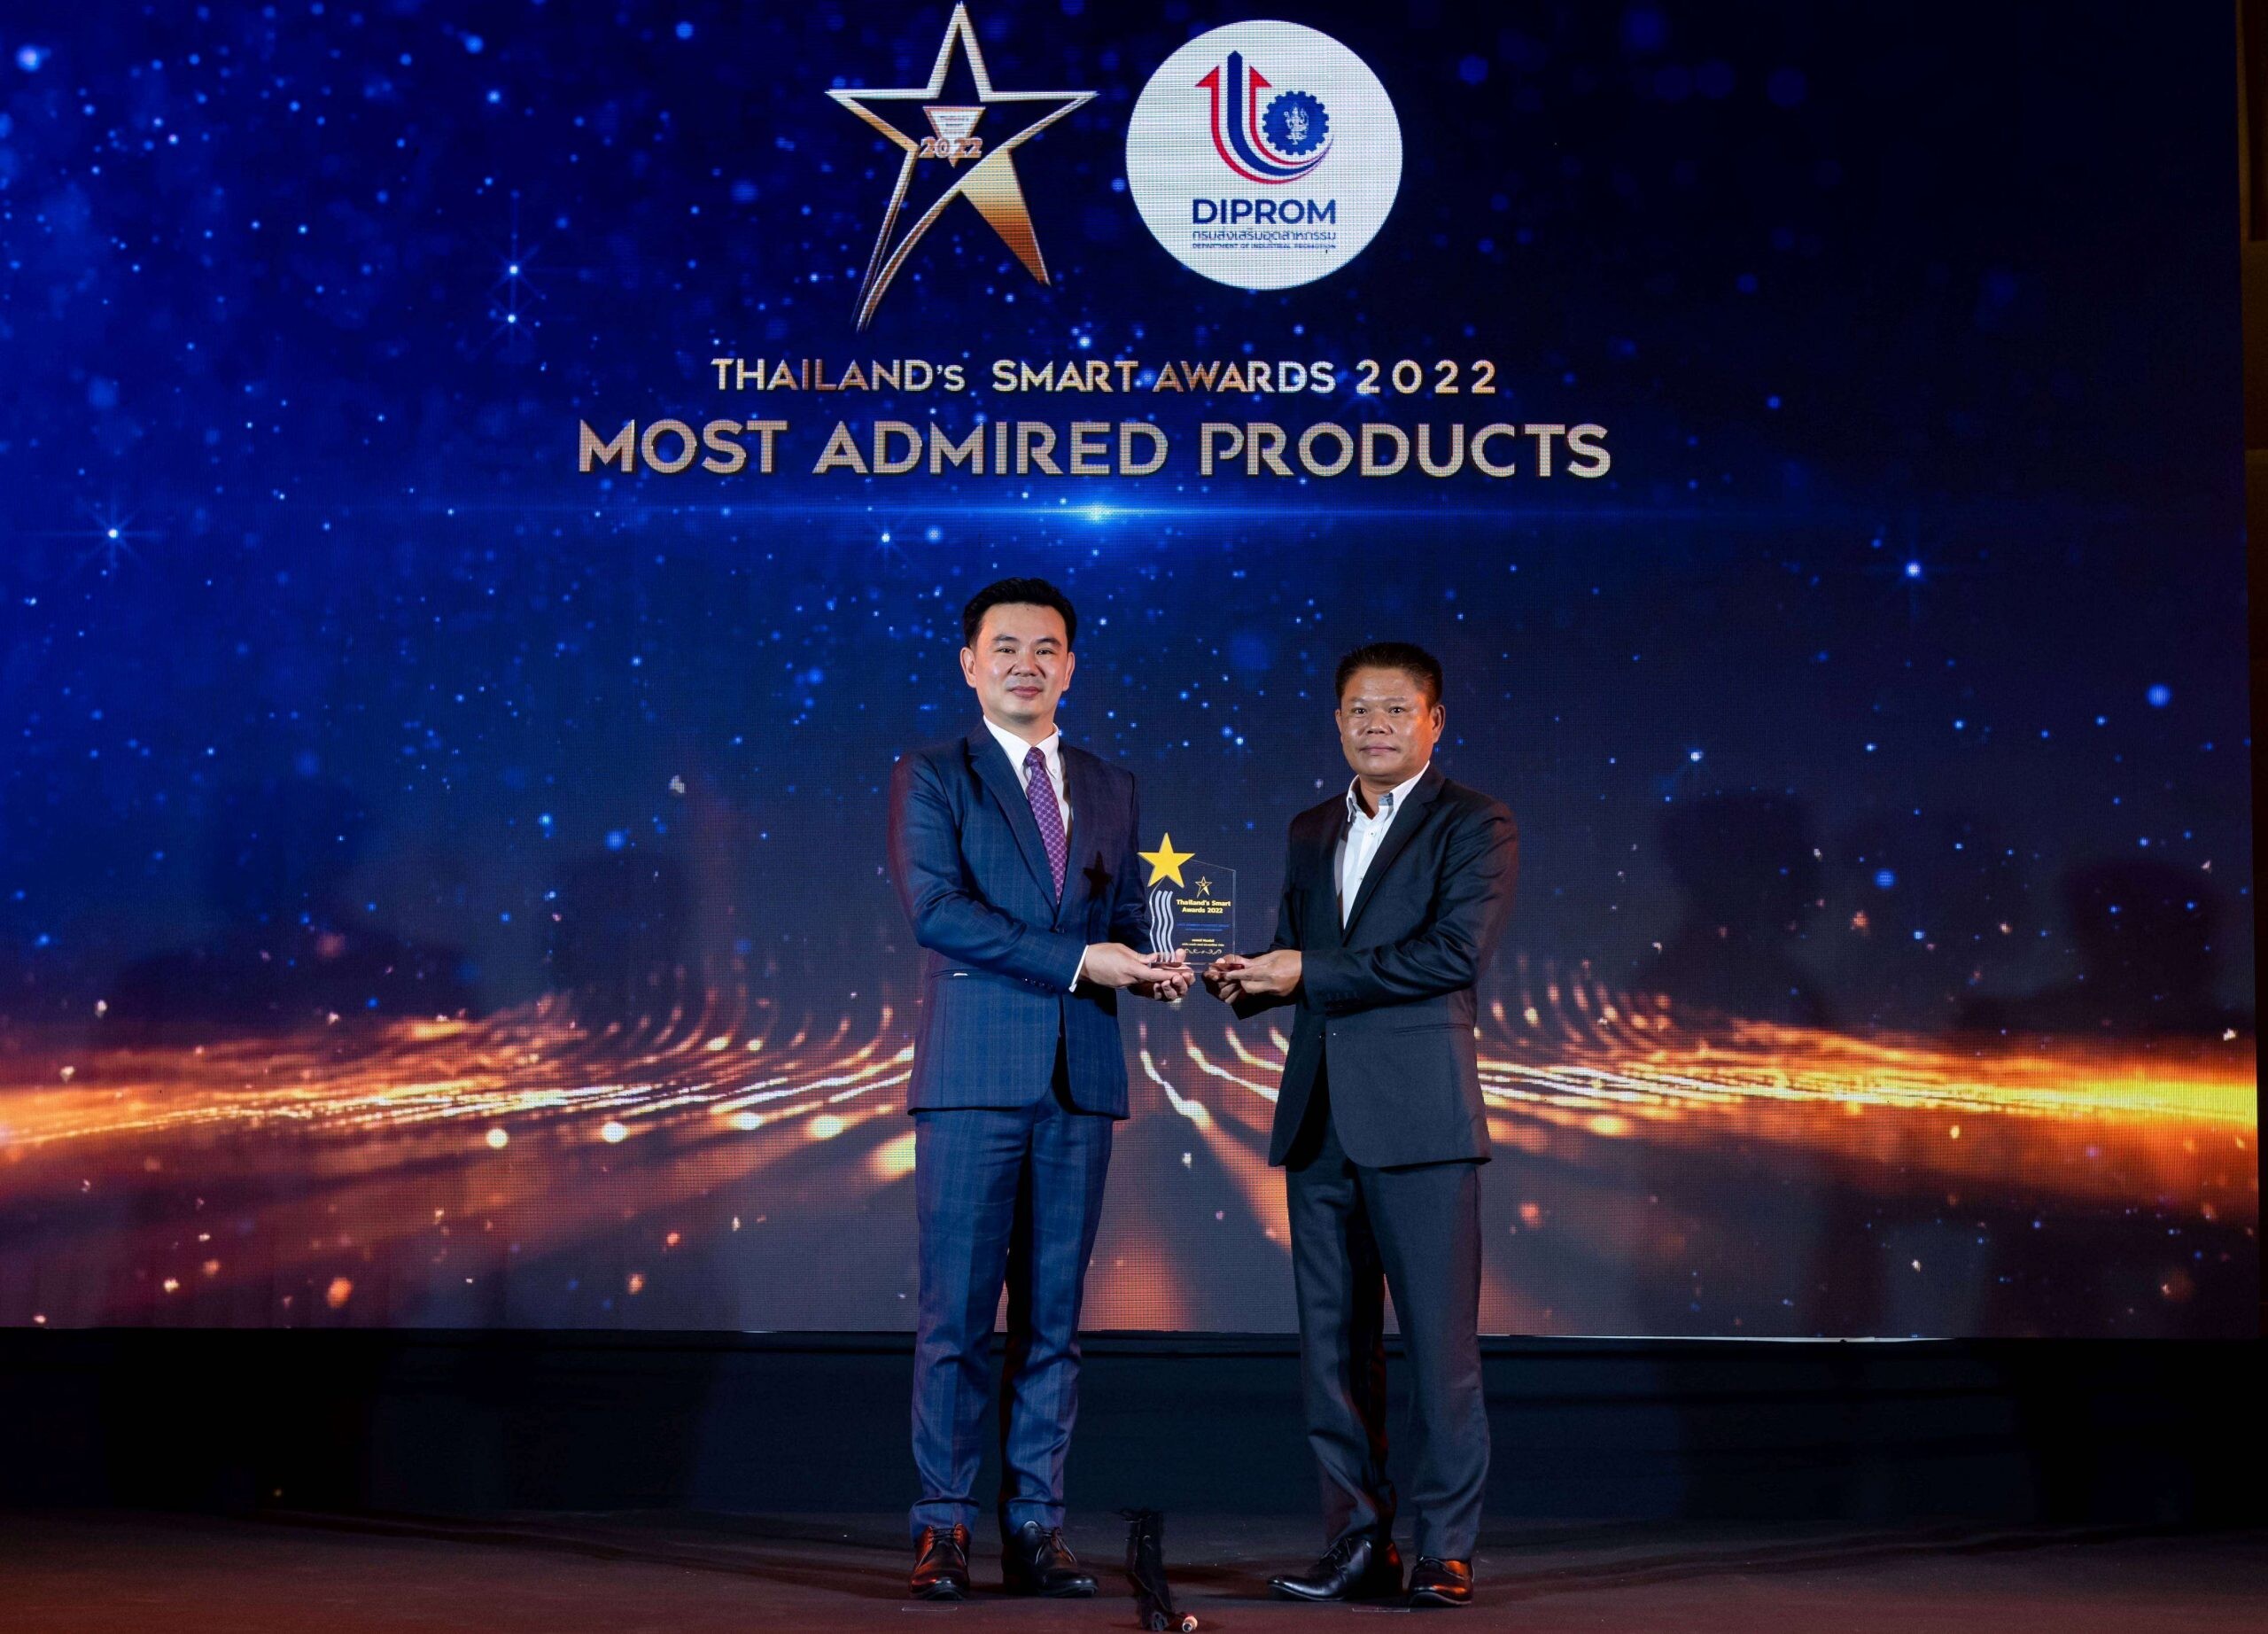 มาสด้า2 คว้ารางวัล "สุดยอดผลิตภัณฑ์ขวัญใจมหาชน"  งาน Thailand's Smart Awards 2022